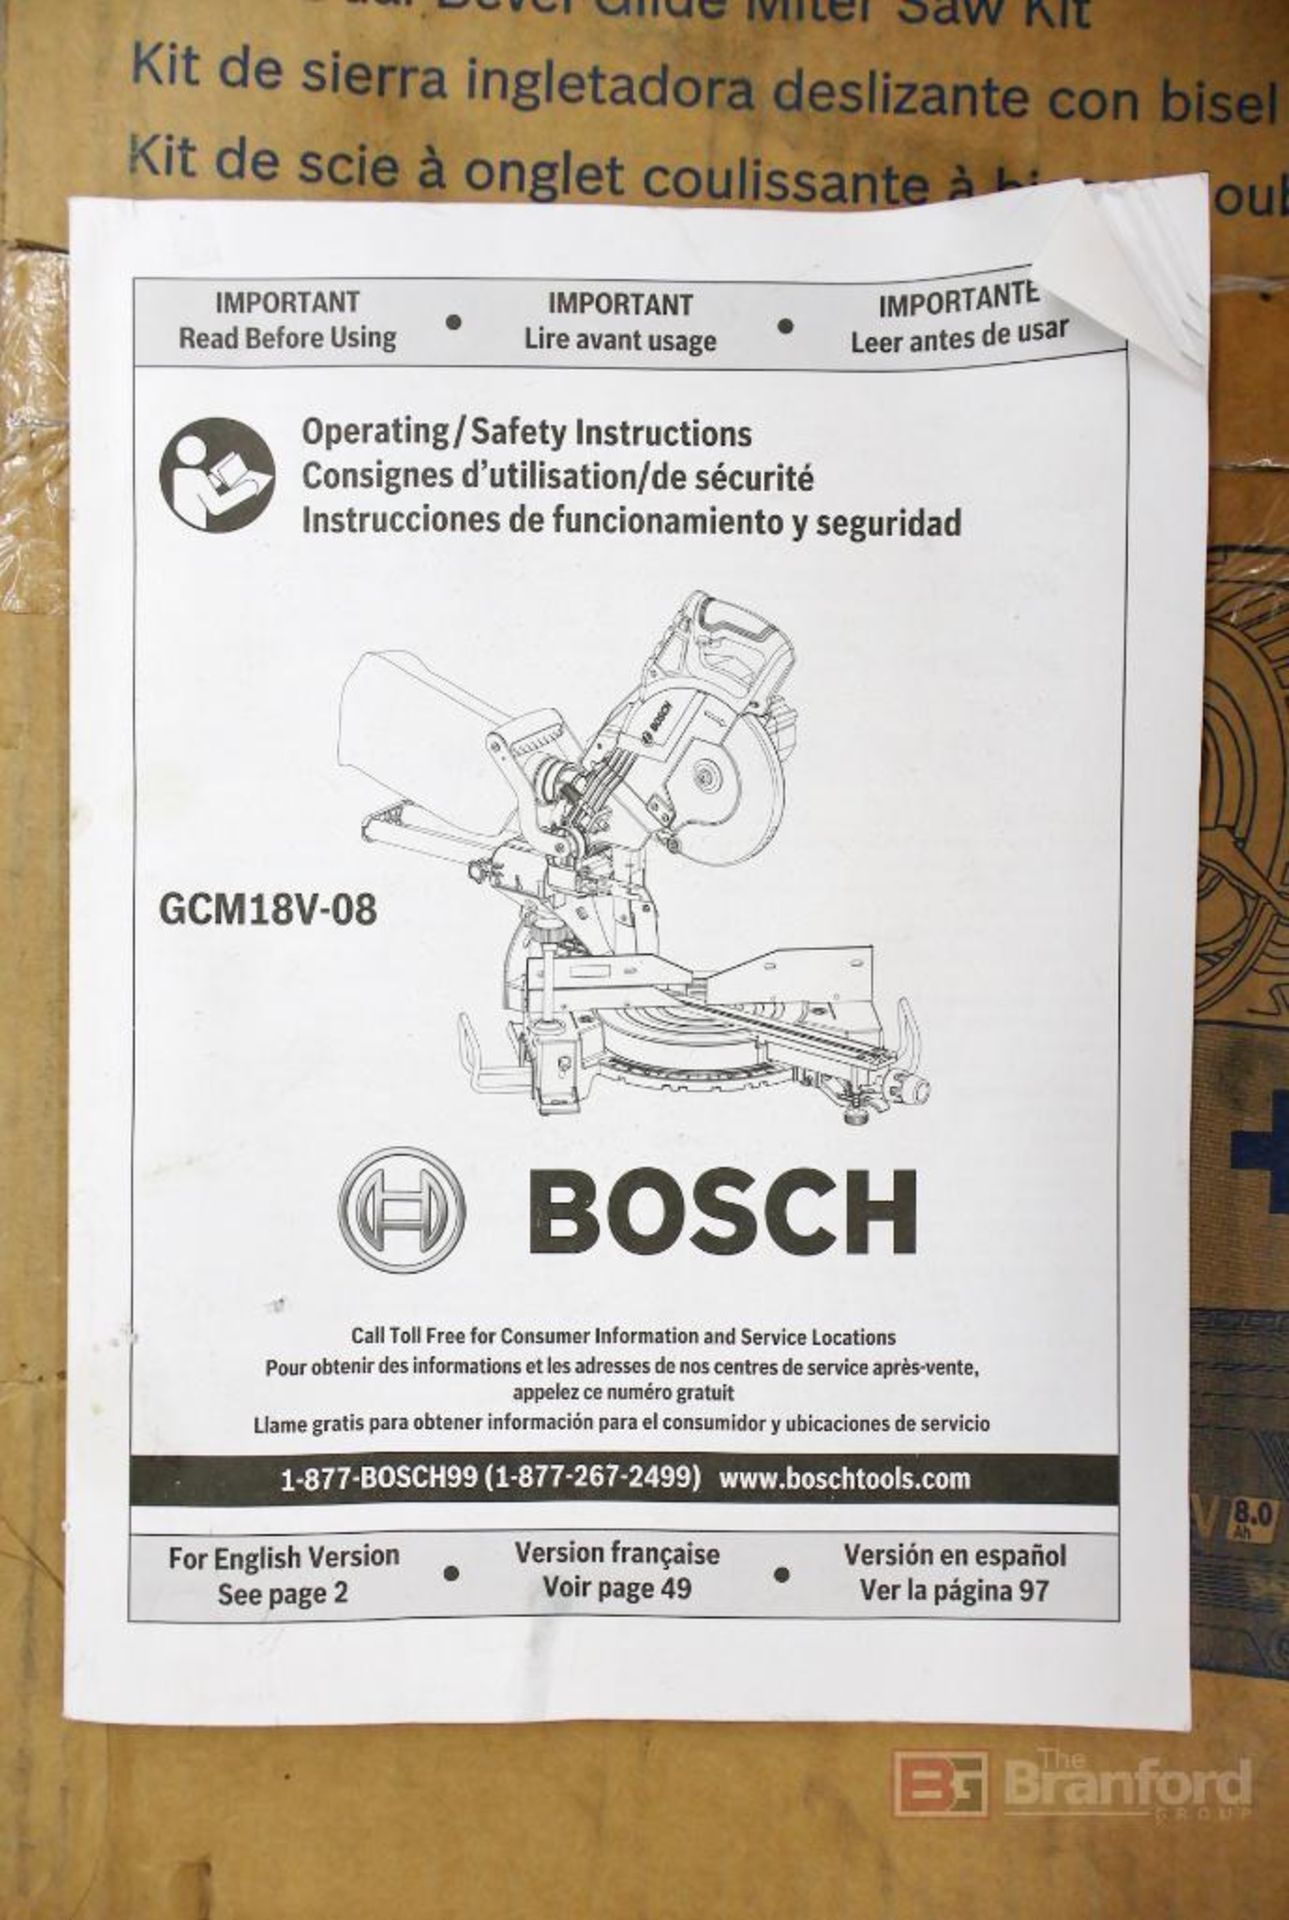 Bosch GCM18V-12GDCN14 ProFactor 12" Dual Bevel Glide Miter Saw Kit - Image 6 of 6